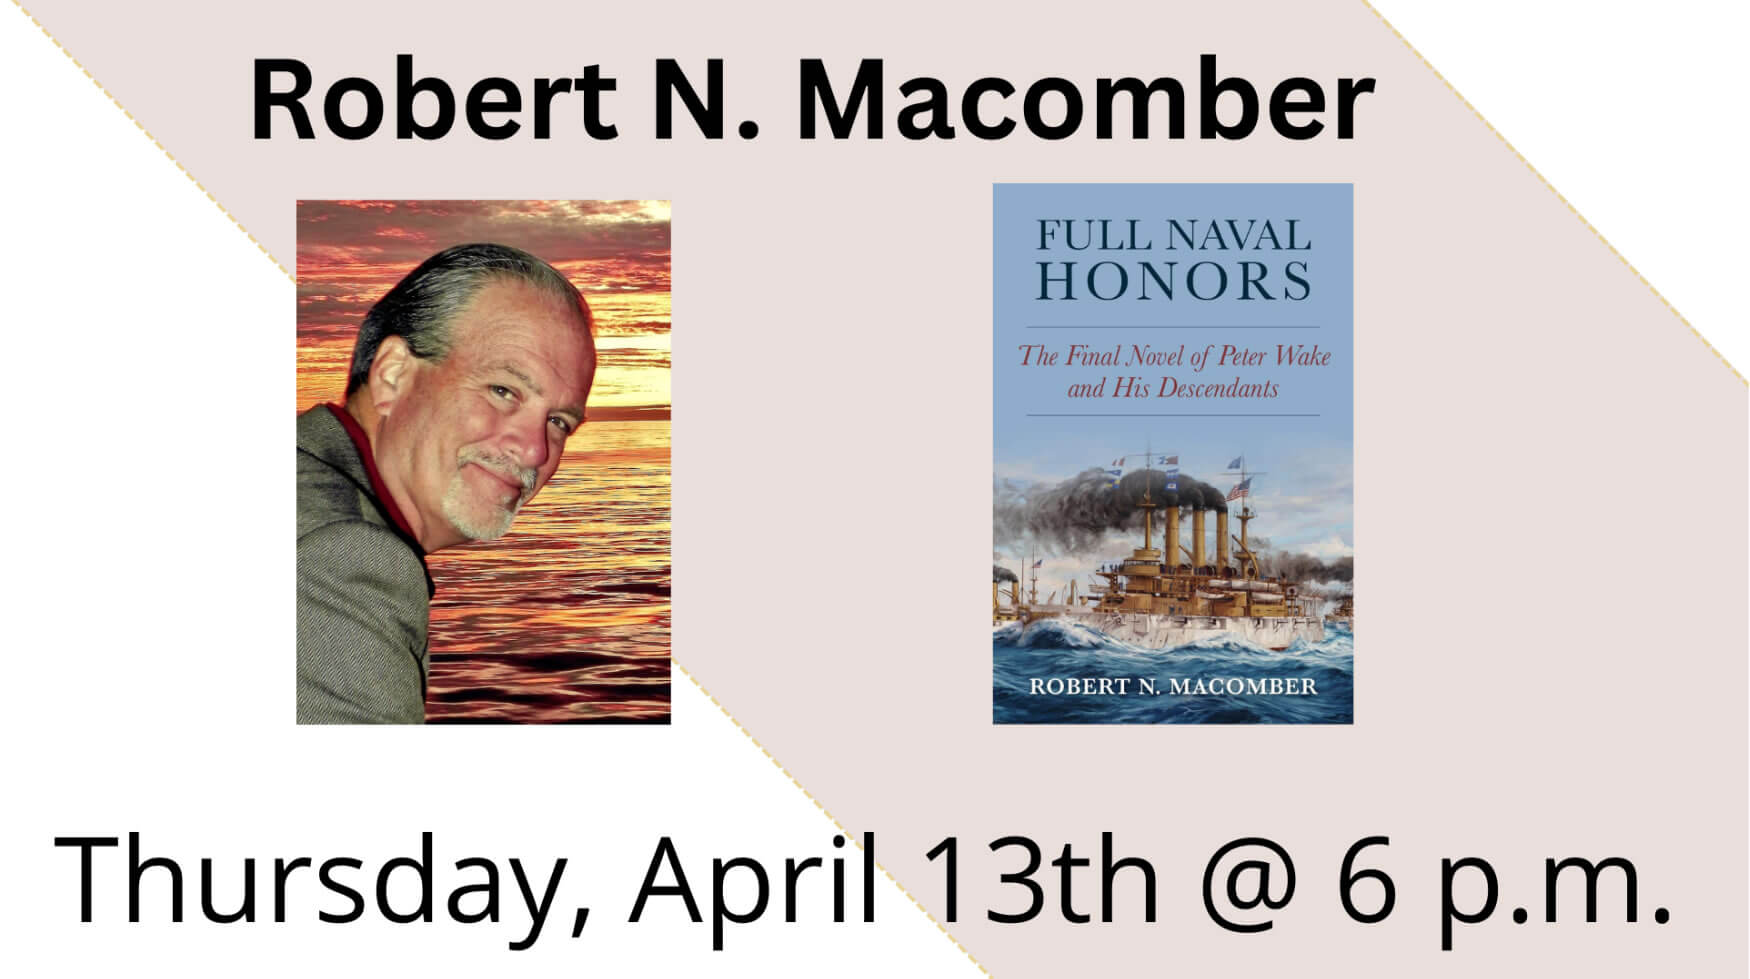 Robert N. Macomber presents Full Naval Honors